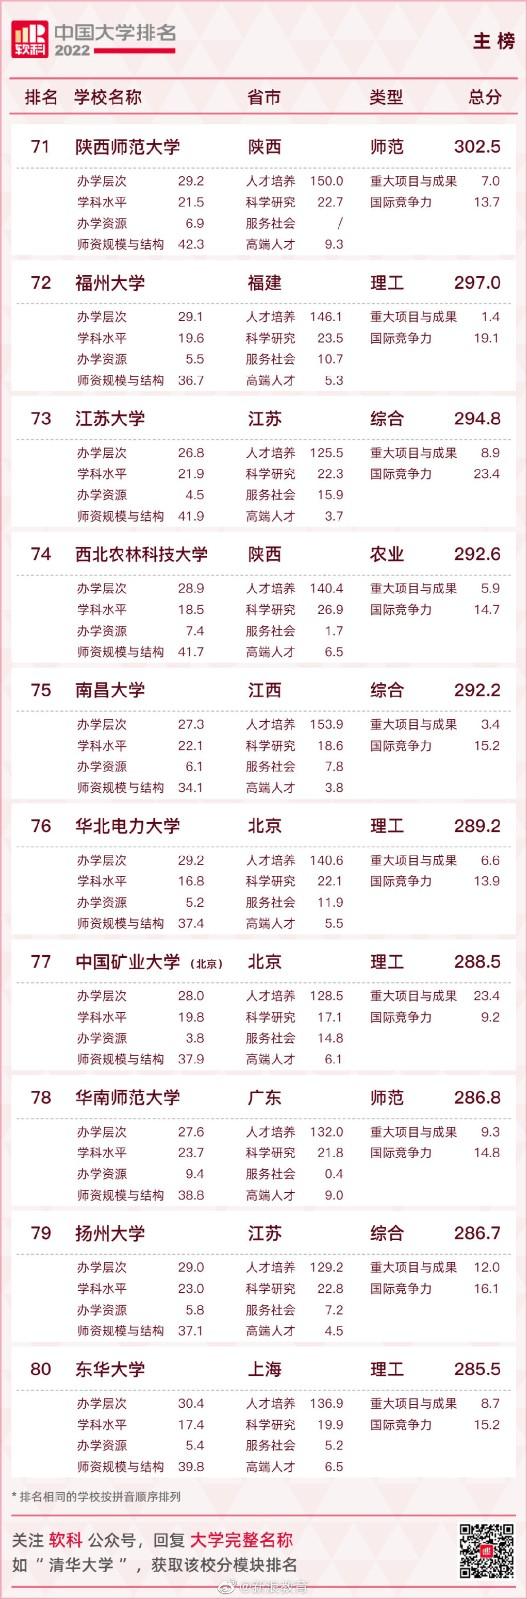 2022中国大学排名 2022软科中国大学排名